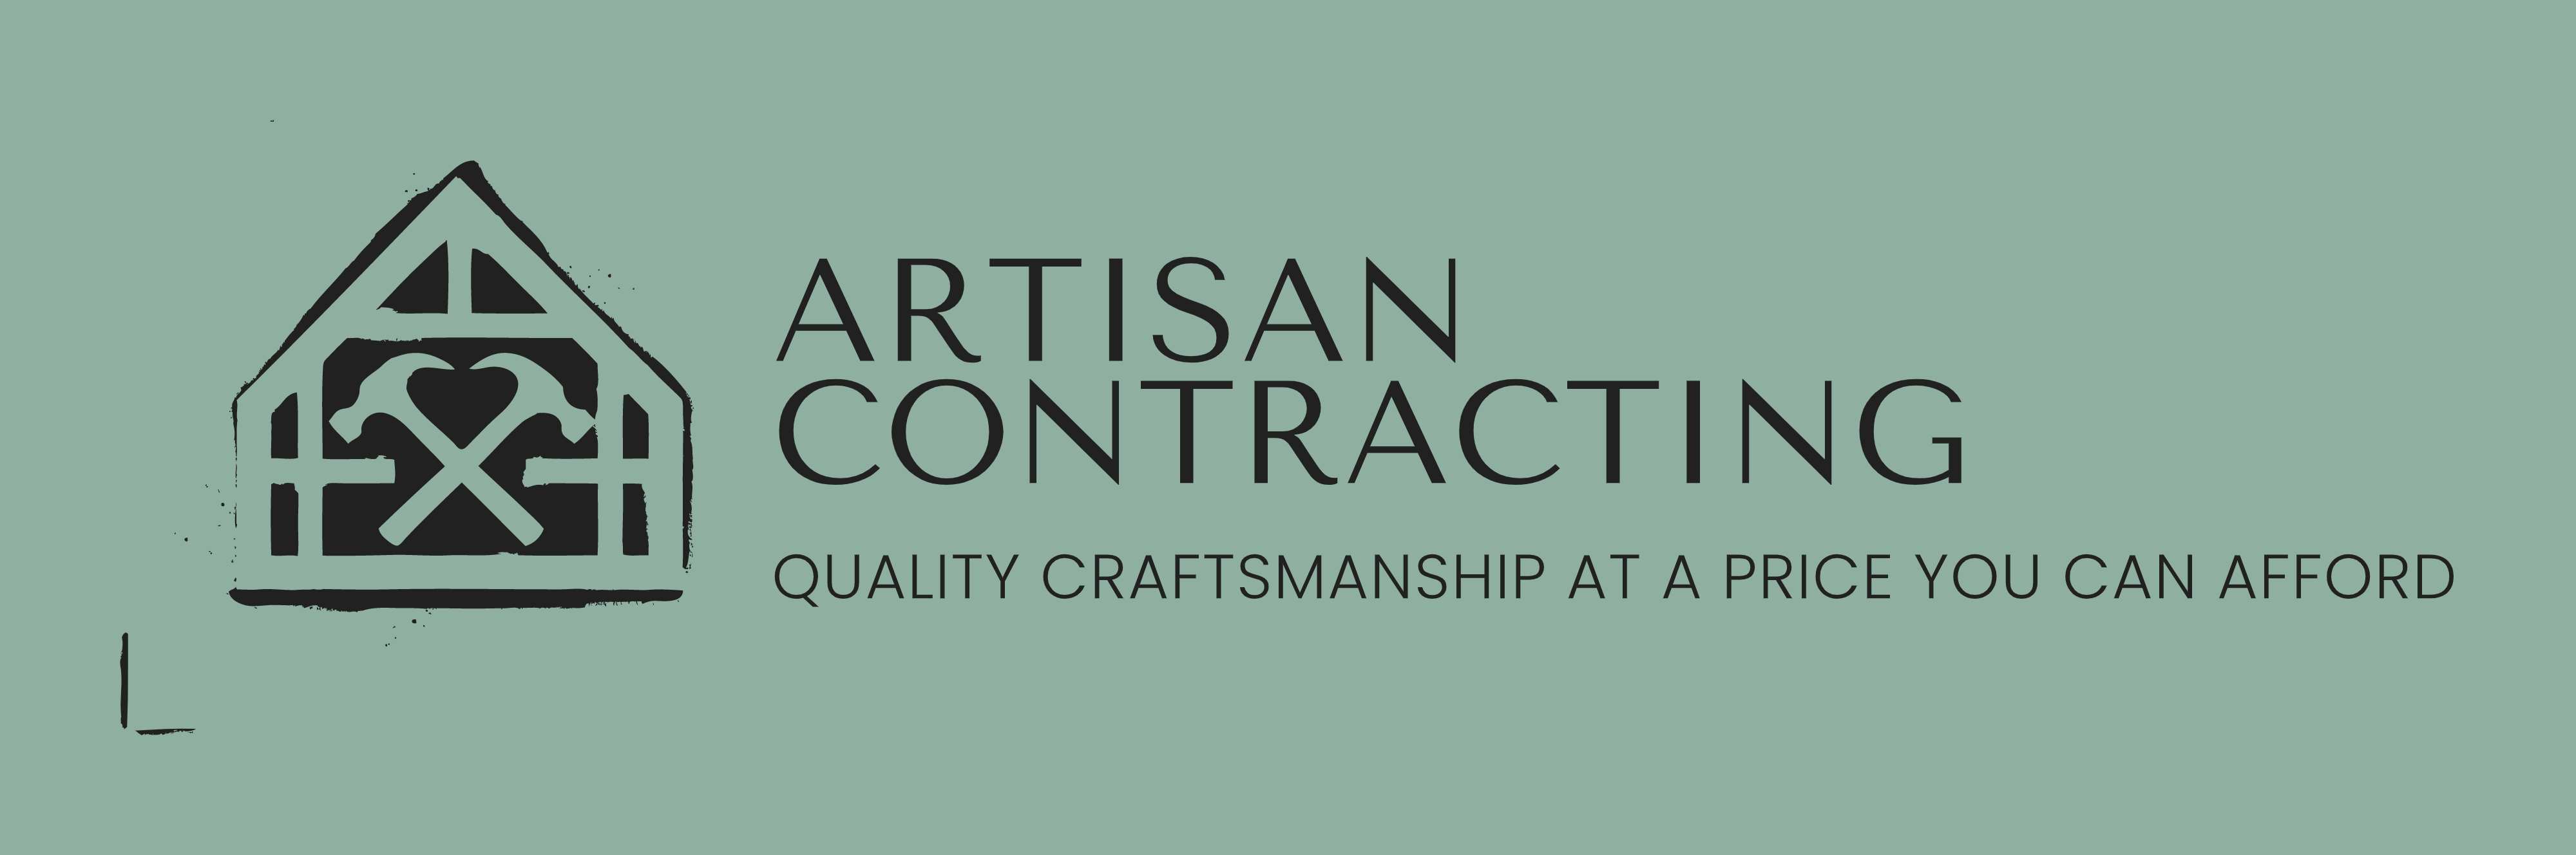 Artisan Contracting Logo